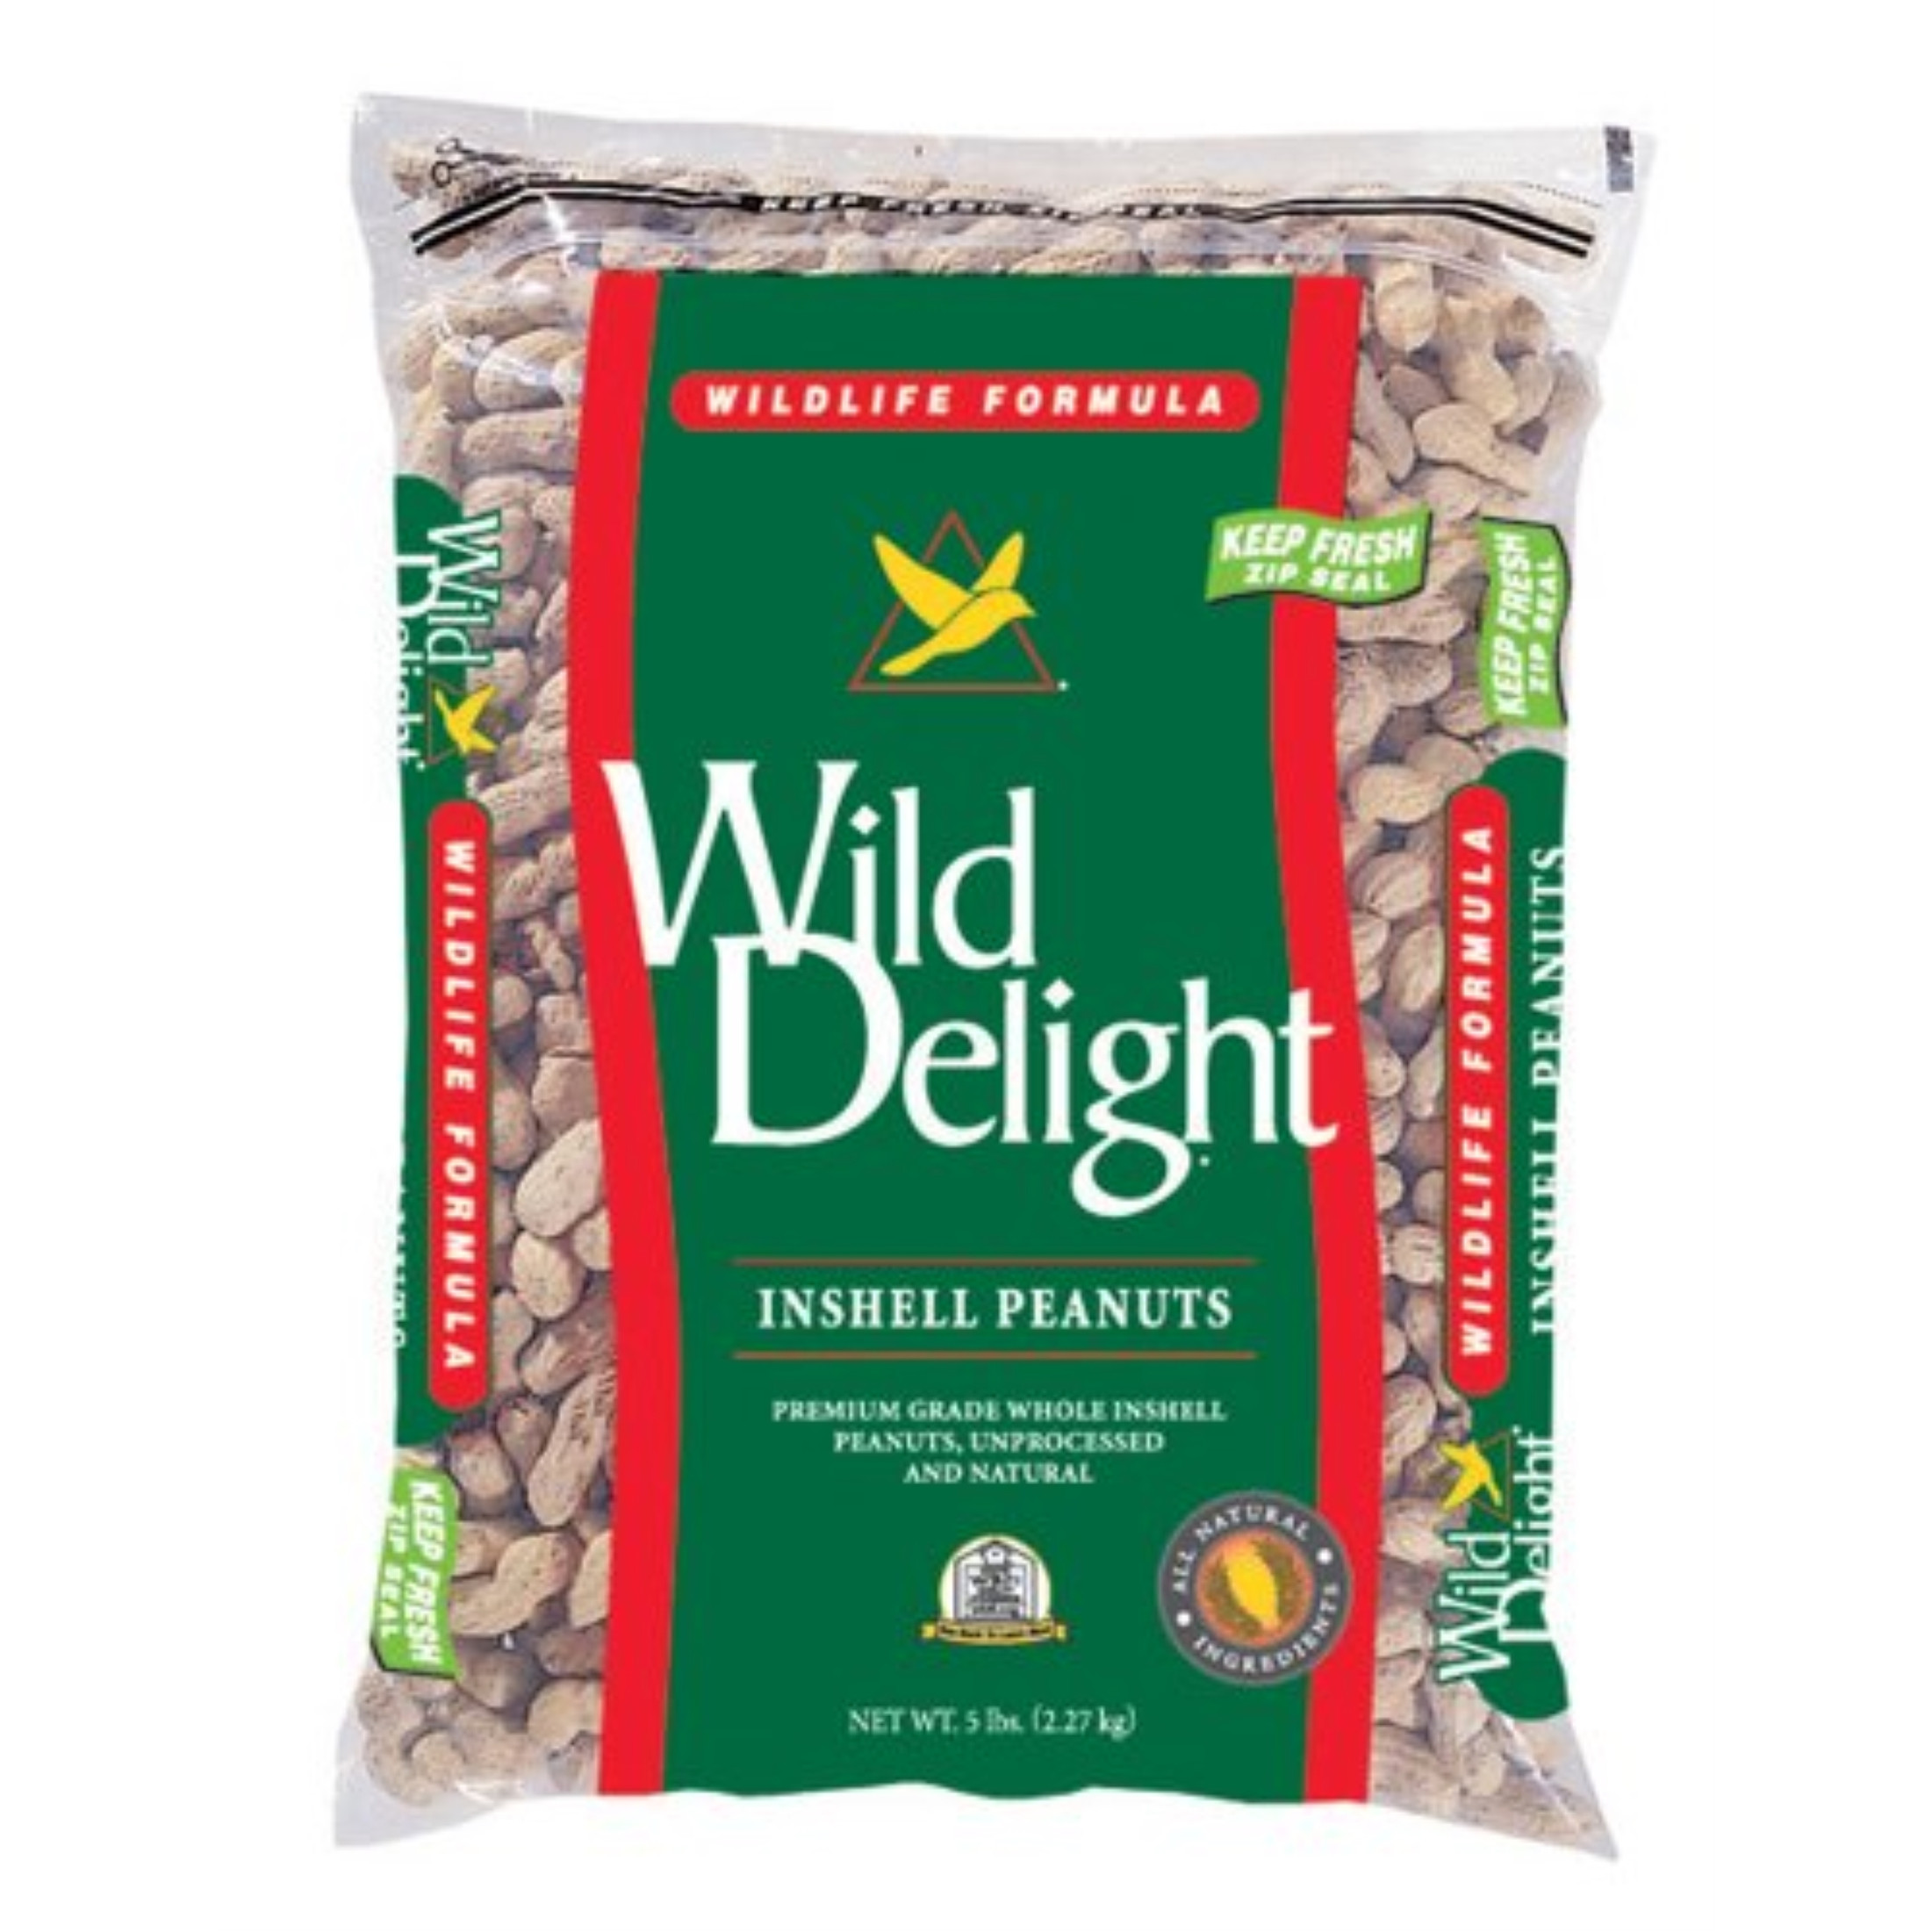 Wild Delight Inshell Peanuts Bird & Wildlife Feed, 13#